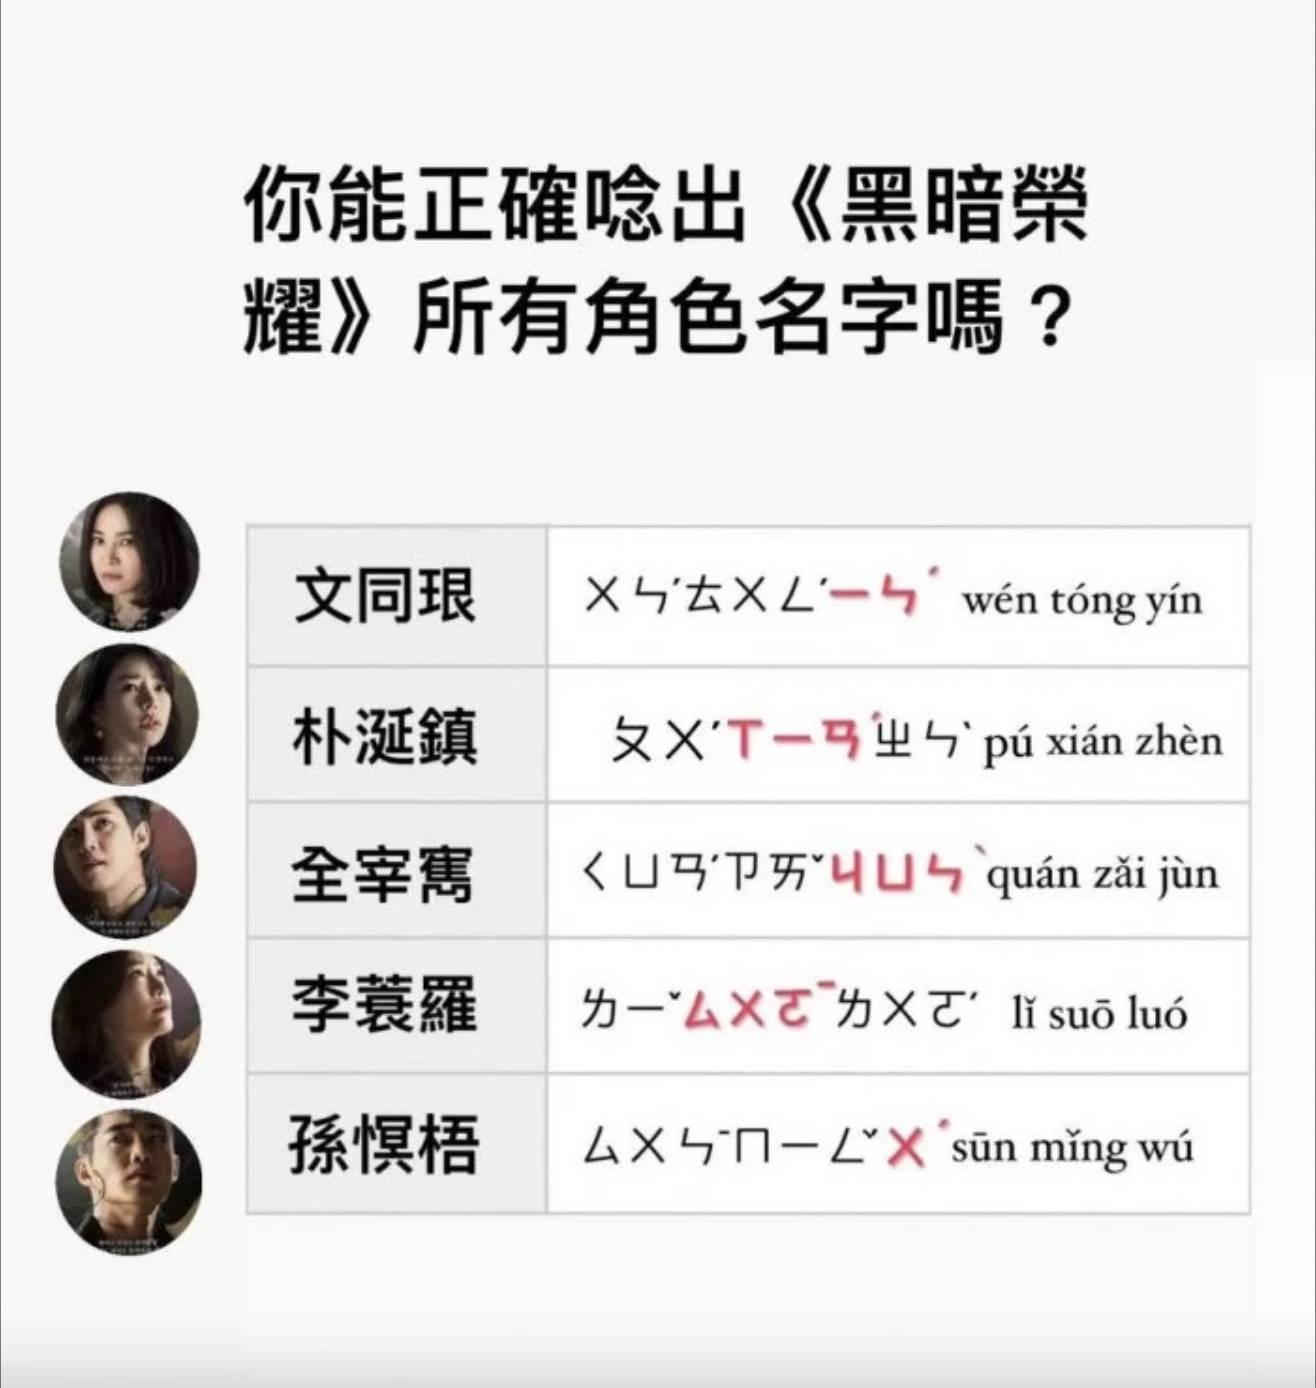 Netflix熱播韓劇《黑暗榮耀》角色漢文名字太難唸引起Dcard網友熱烈討論。